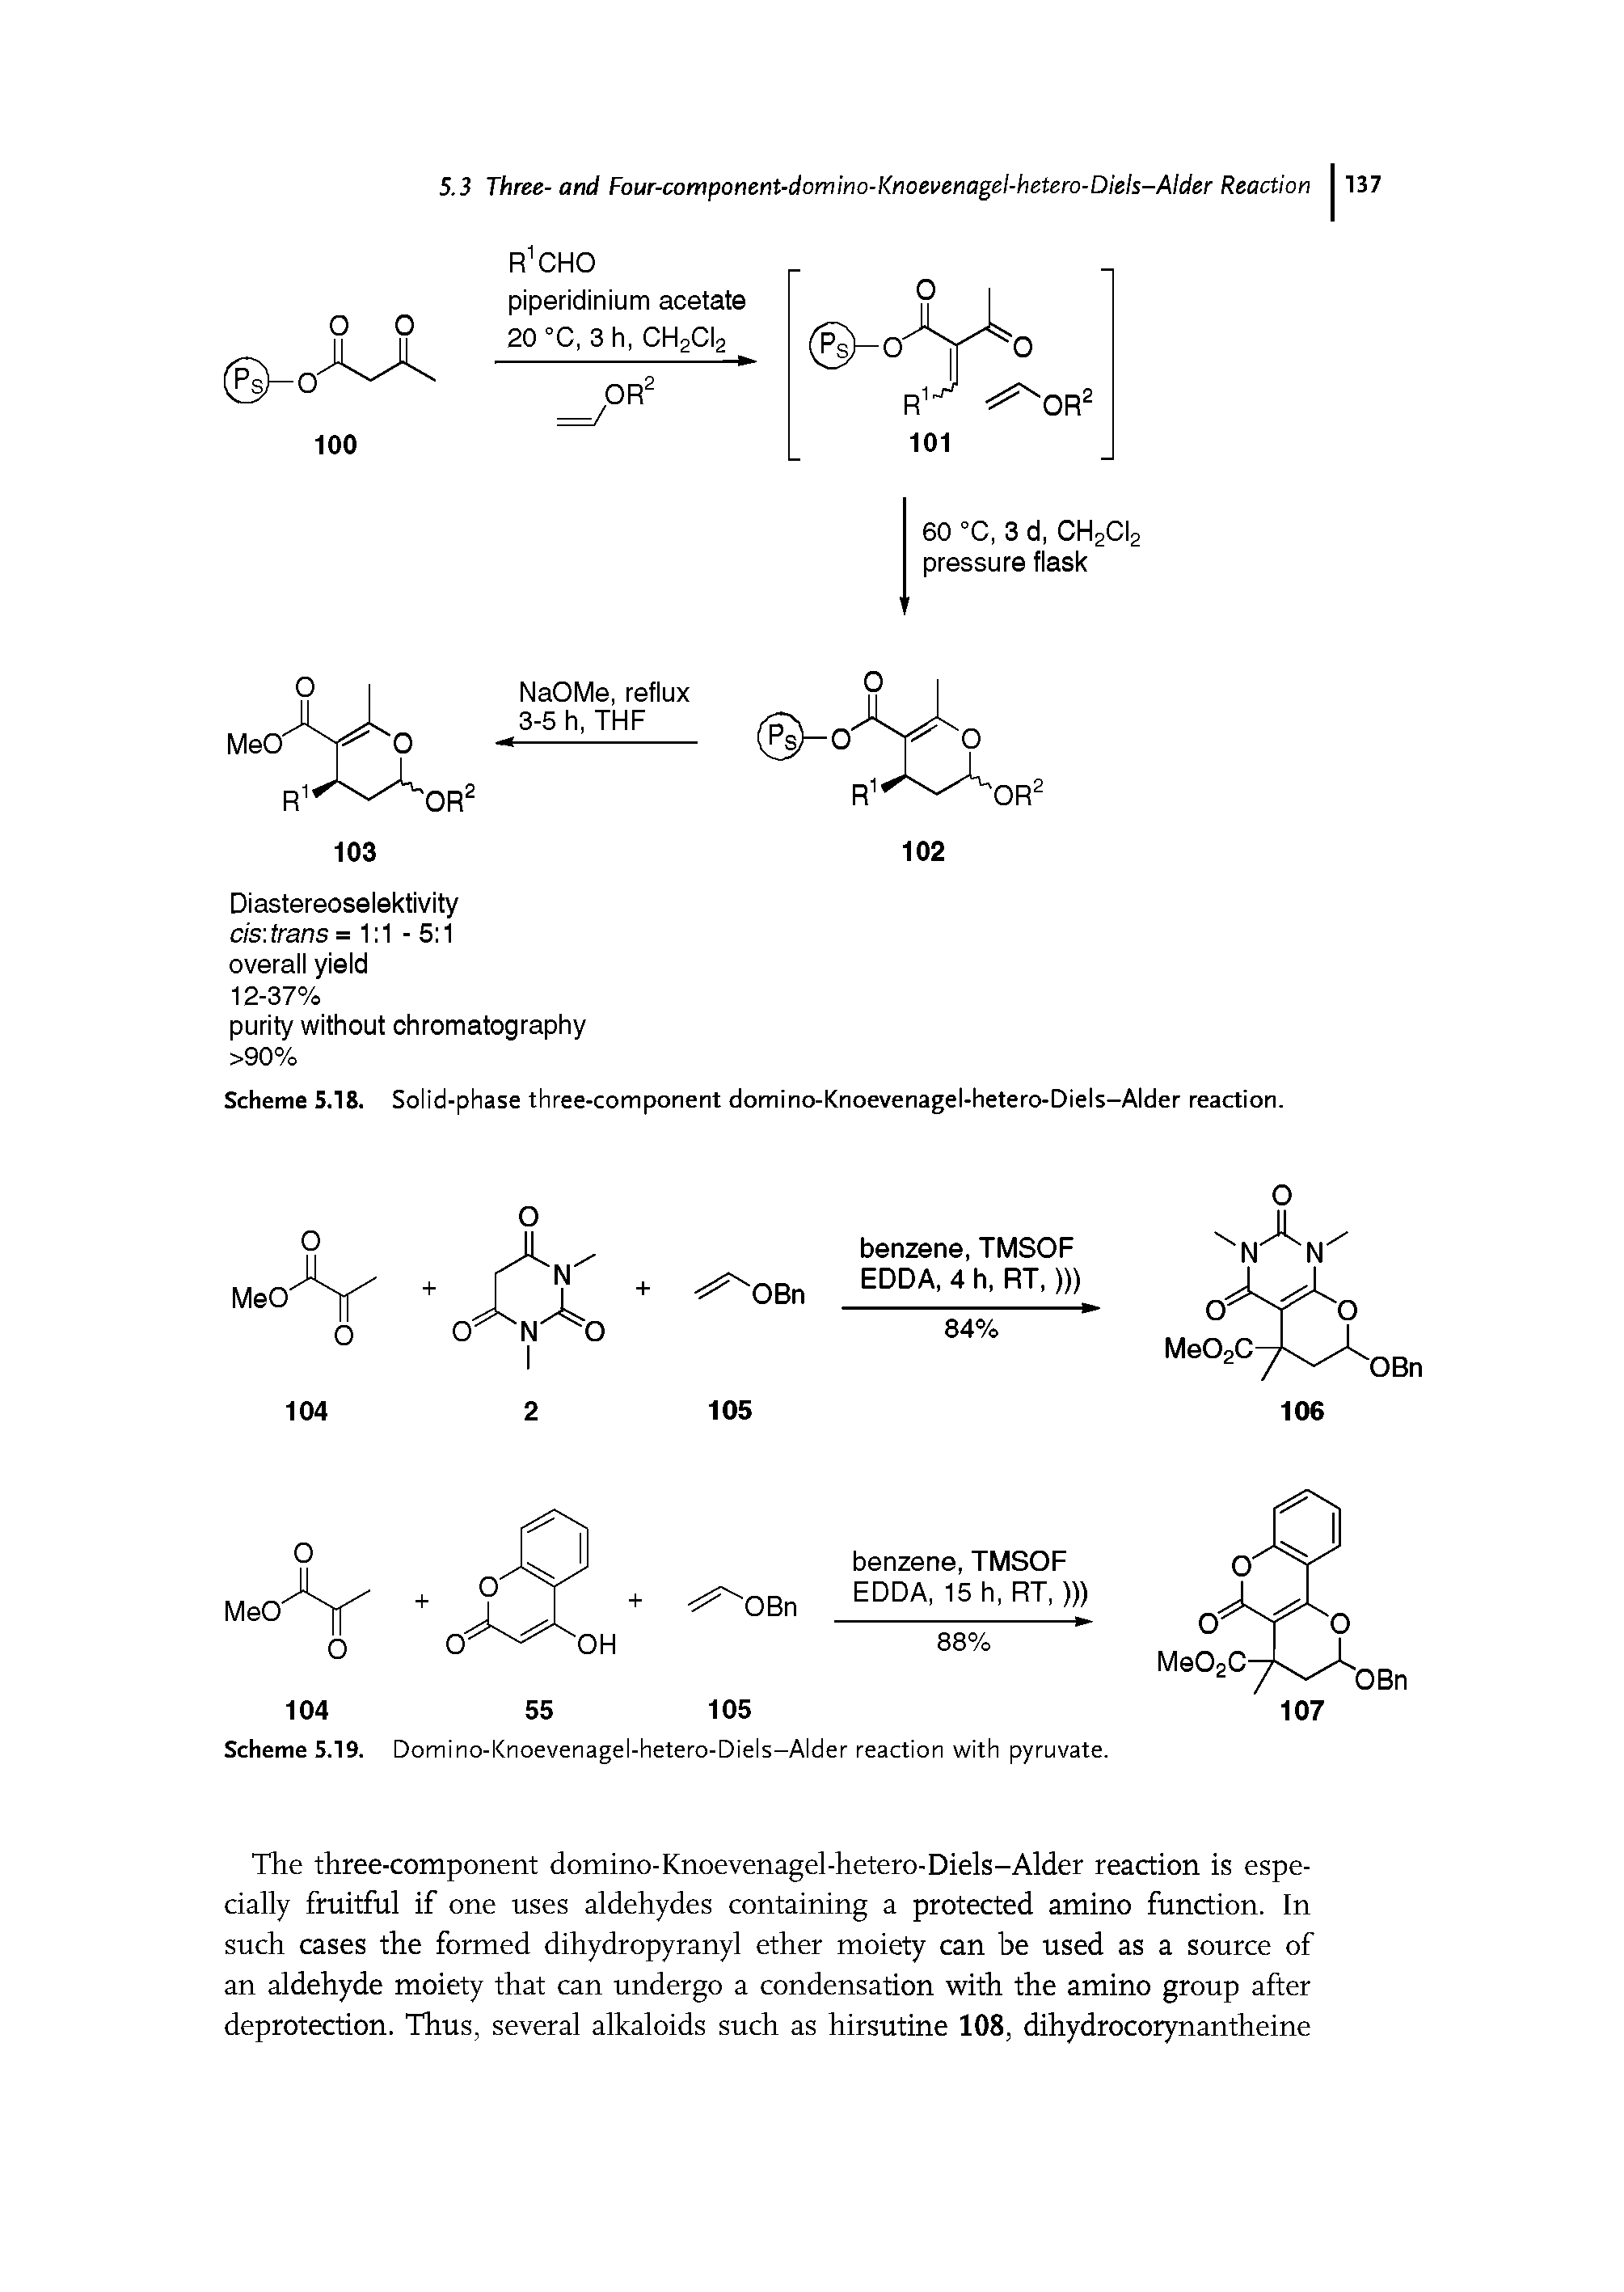 Scheme 5.18. Solid-phase three-component domino-Knoevenagel-hetero-Diels—Alder reaction.